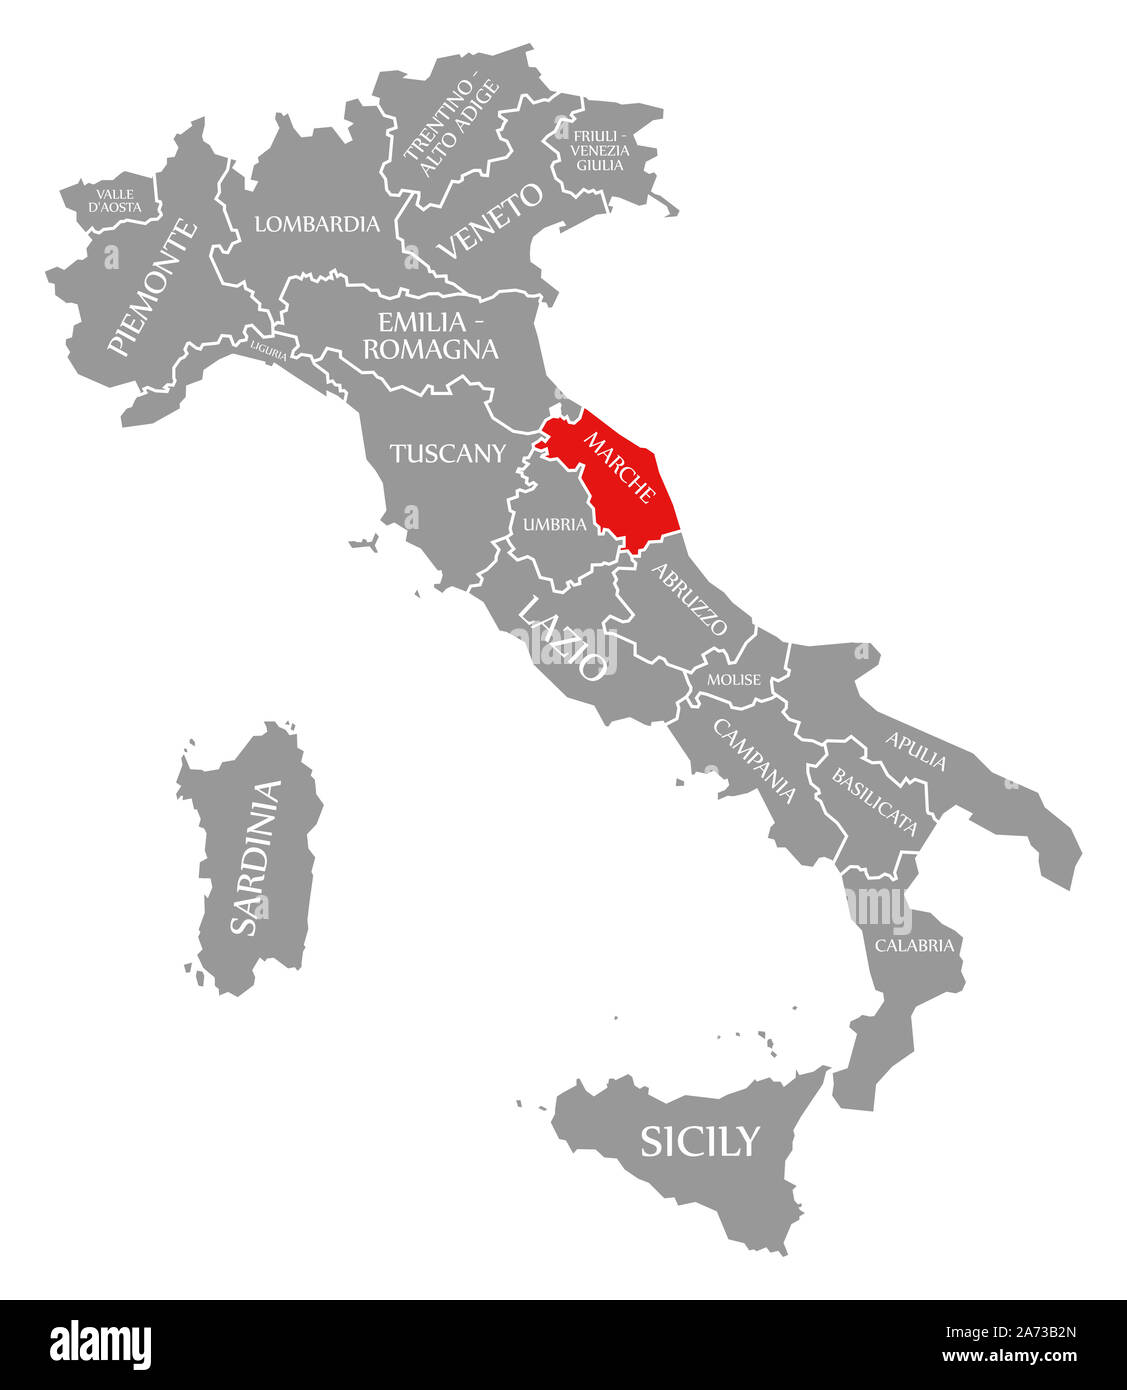 Marche evidenziata in rosso nella mappa di Italia Foto Stock